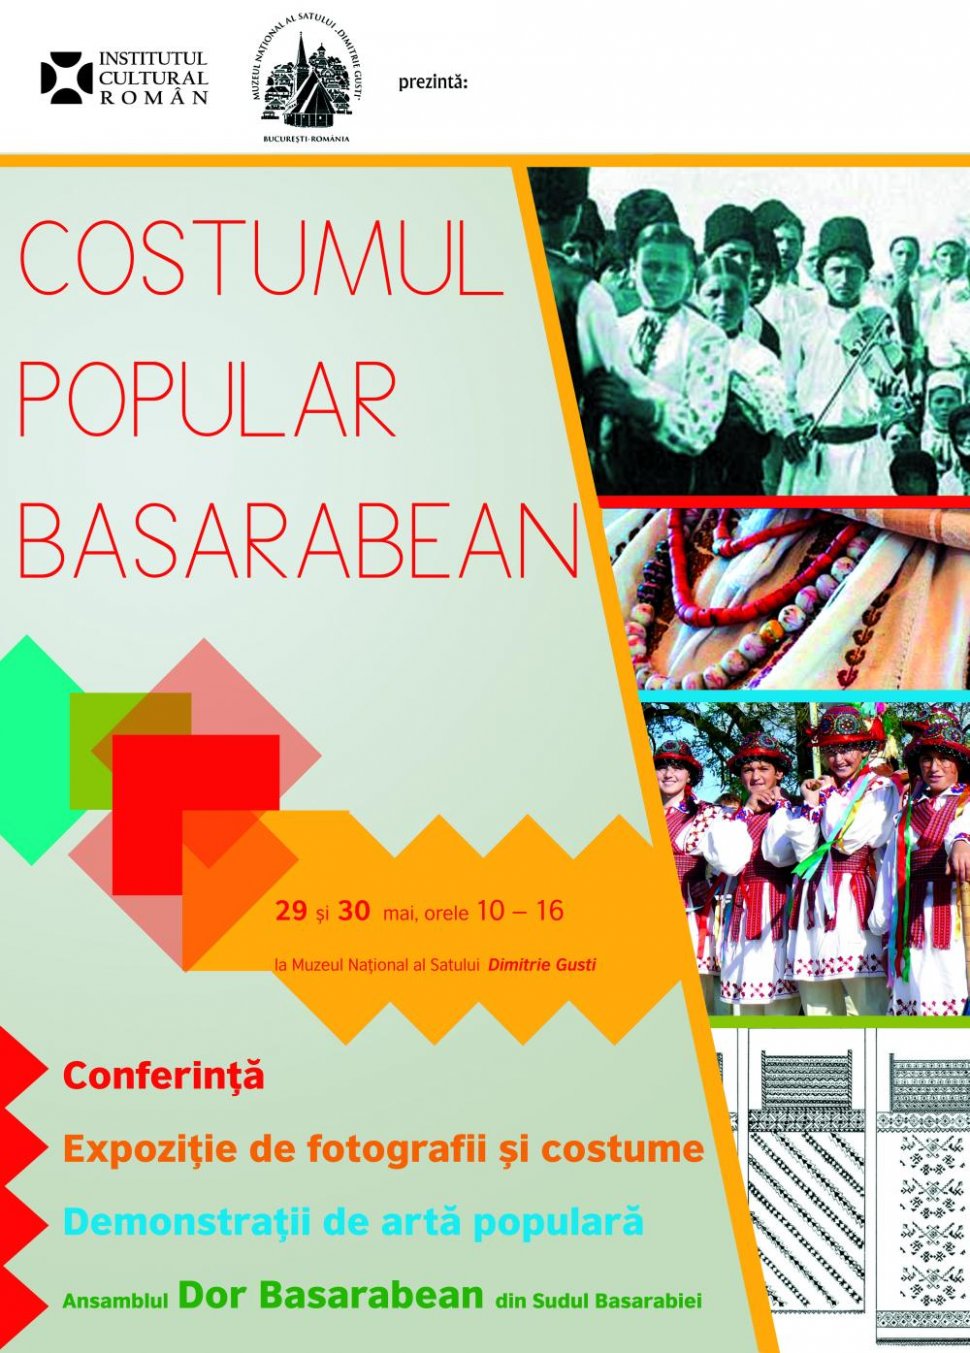 COSTUMUL POPULAR BASARABEAN - Conferinţă, expoziţie, meşteri populari şi un spectacol cu Ansamblul Dor Basarabean